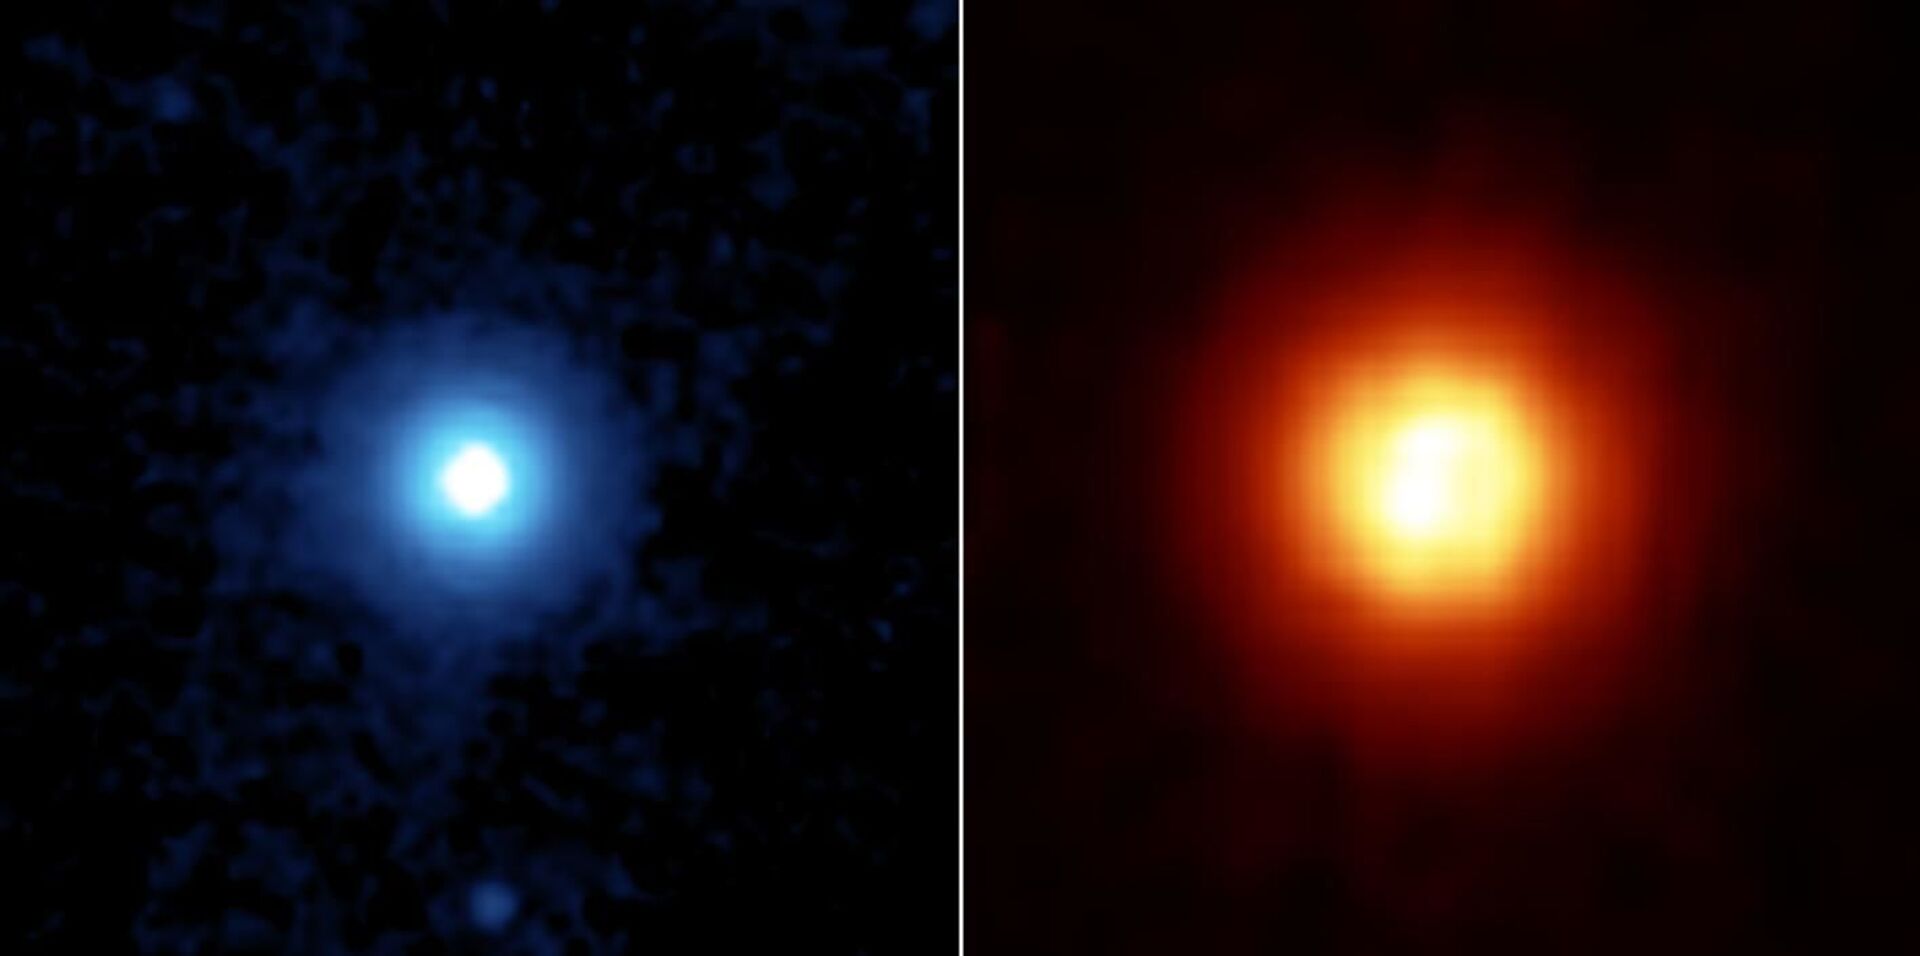 Astrônomos detectam possível exoplaneta 'superquente' orbitando estrela Vega - Sputnik Brasil, 1920, 13.03.2021